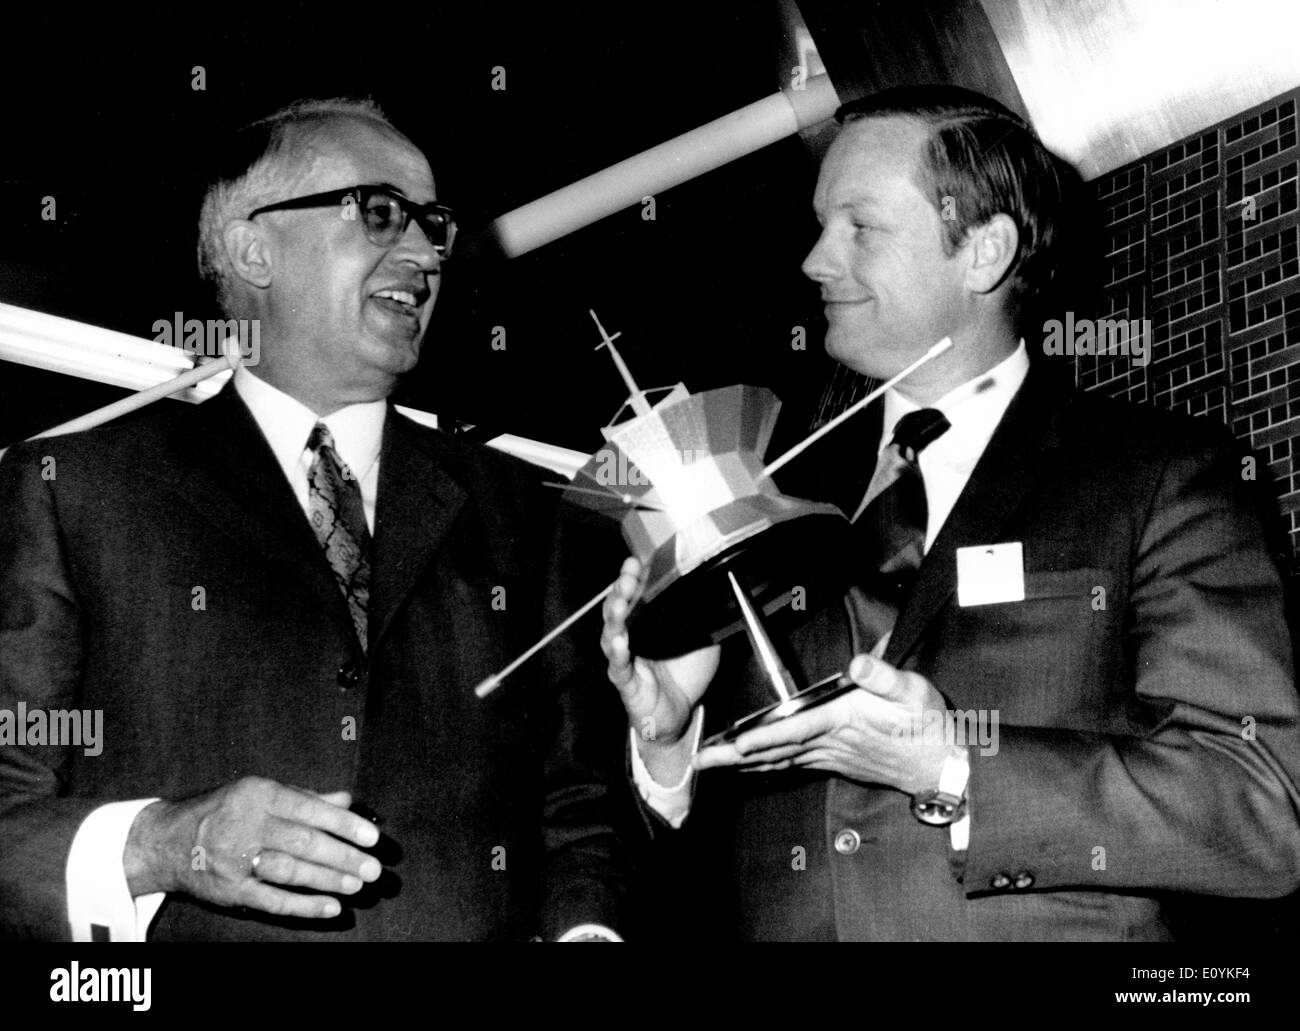 Août 10, 1970, Munich, Allemagne ; le premier homme sur la lune est de visiter Munich à l'heure actuelle. Dans le centre de la recherche spatiale, l'Messerschmidt-Bolkow-Blohm GmbH, près de Munich, il avait lui-même informé de l'état de la technologie de l'espace allemand. La photo montre Neil ARMSTRONG (R) avec le modèle du premier satellite de recherche allemand appelé 'Azur' parler avec DR. BOLKOW. Banque D'Images